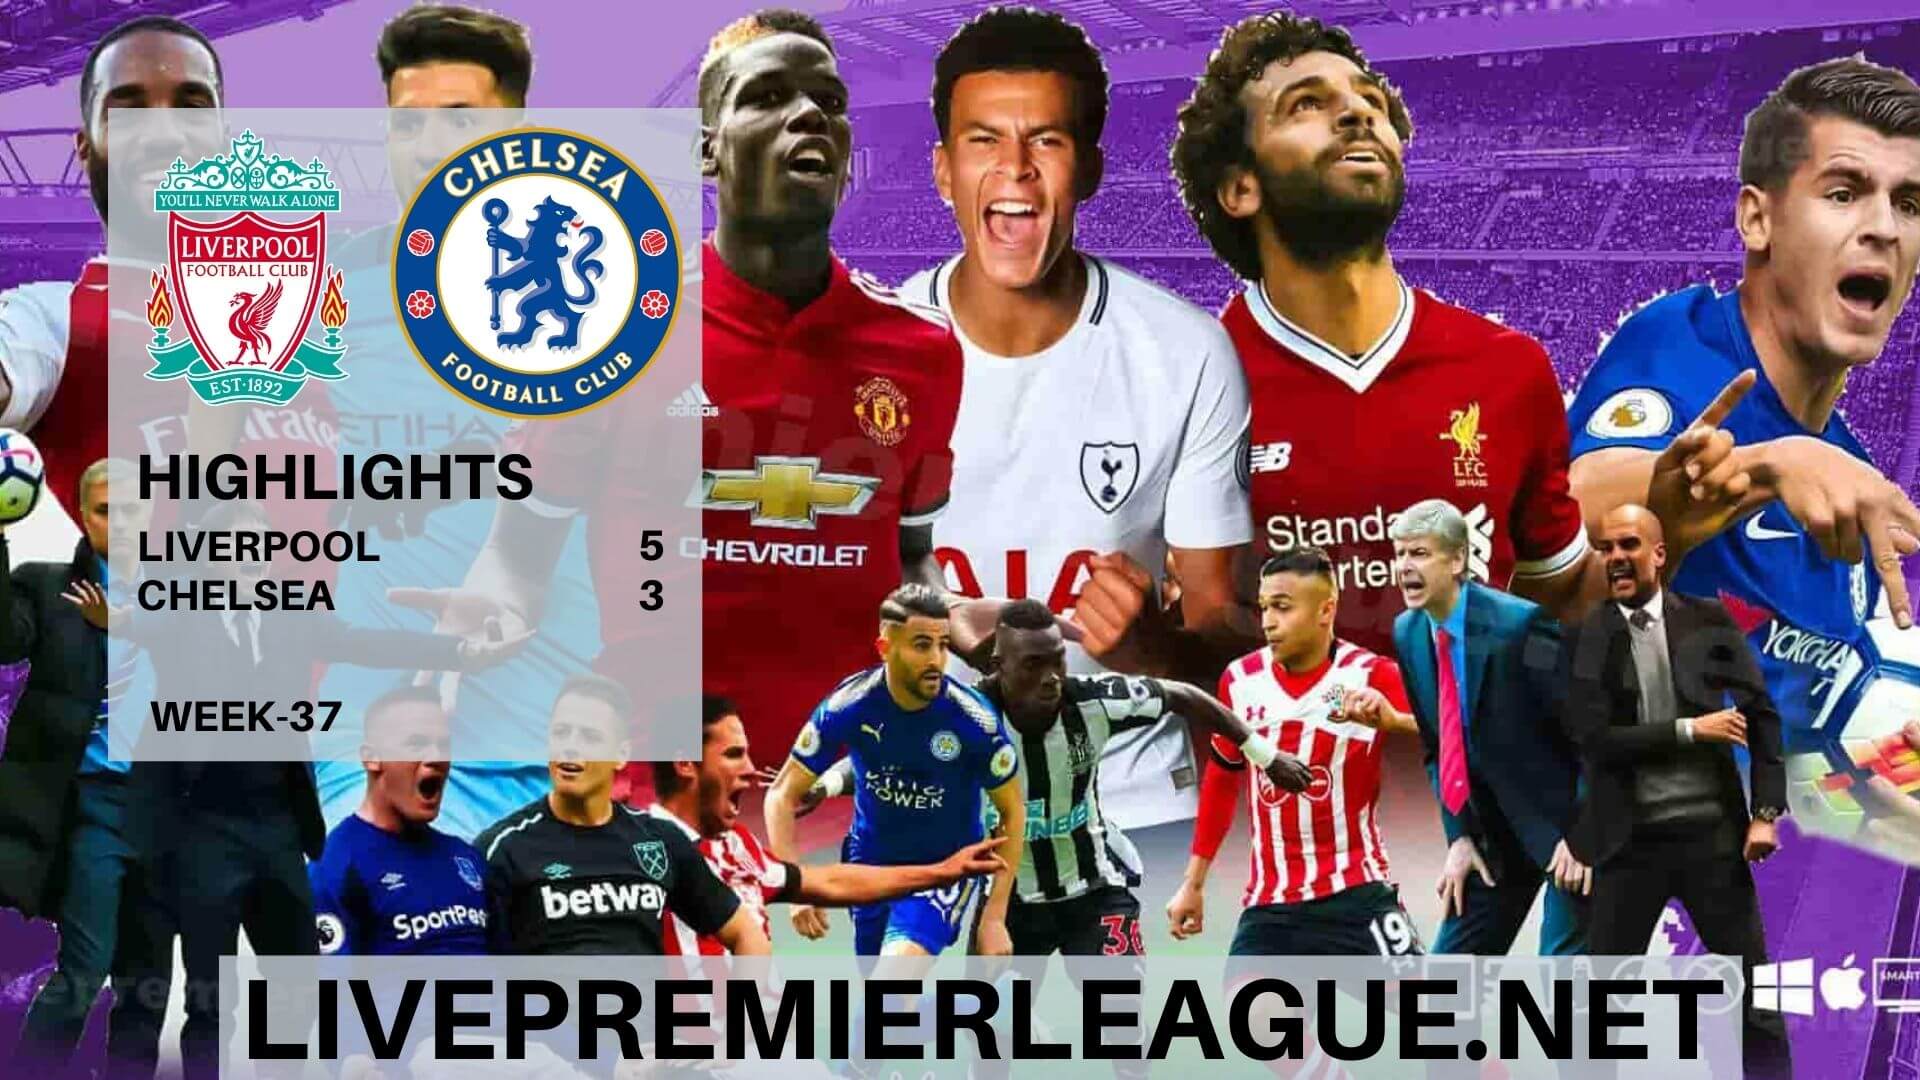 Liverpool Vs Chelsea Highlights 2020 Week 37